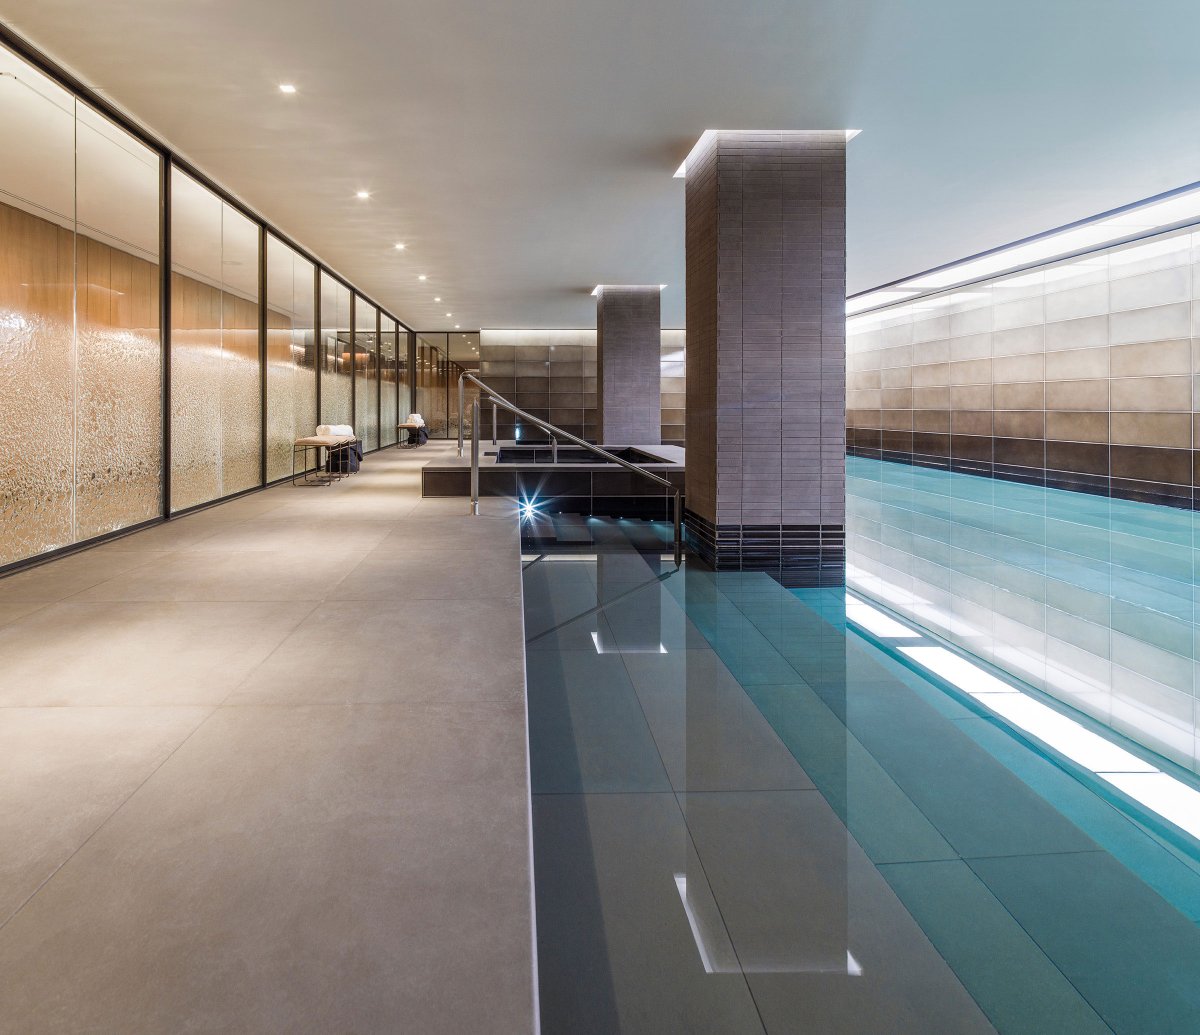 20 metre swimming pool with striking design